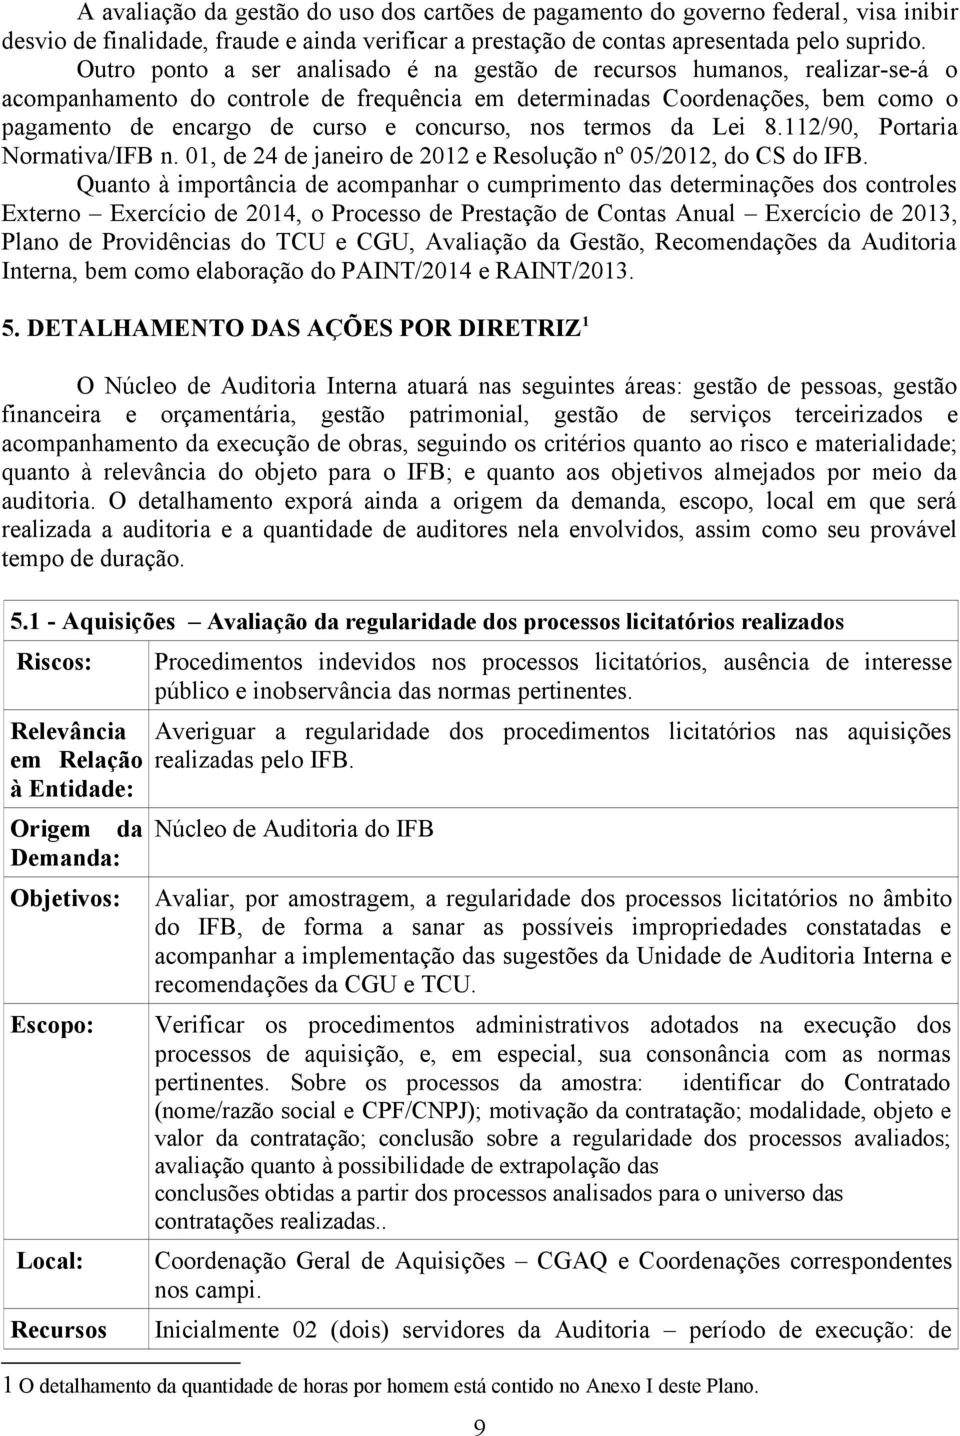 concurso, nos termos da Lei 8.112/90, Portaria Normativa/IFB n. 01, de 24 de janeiro de 2012 e Resolução nº 05/2012, do CS do IFB.